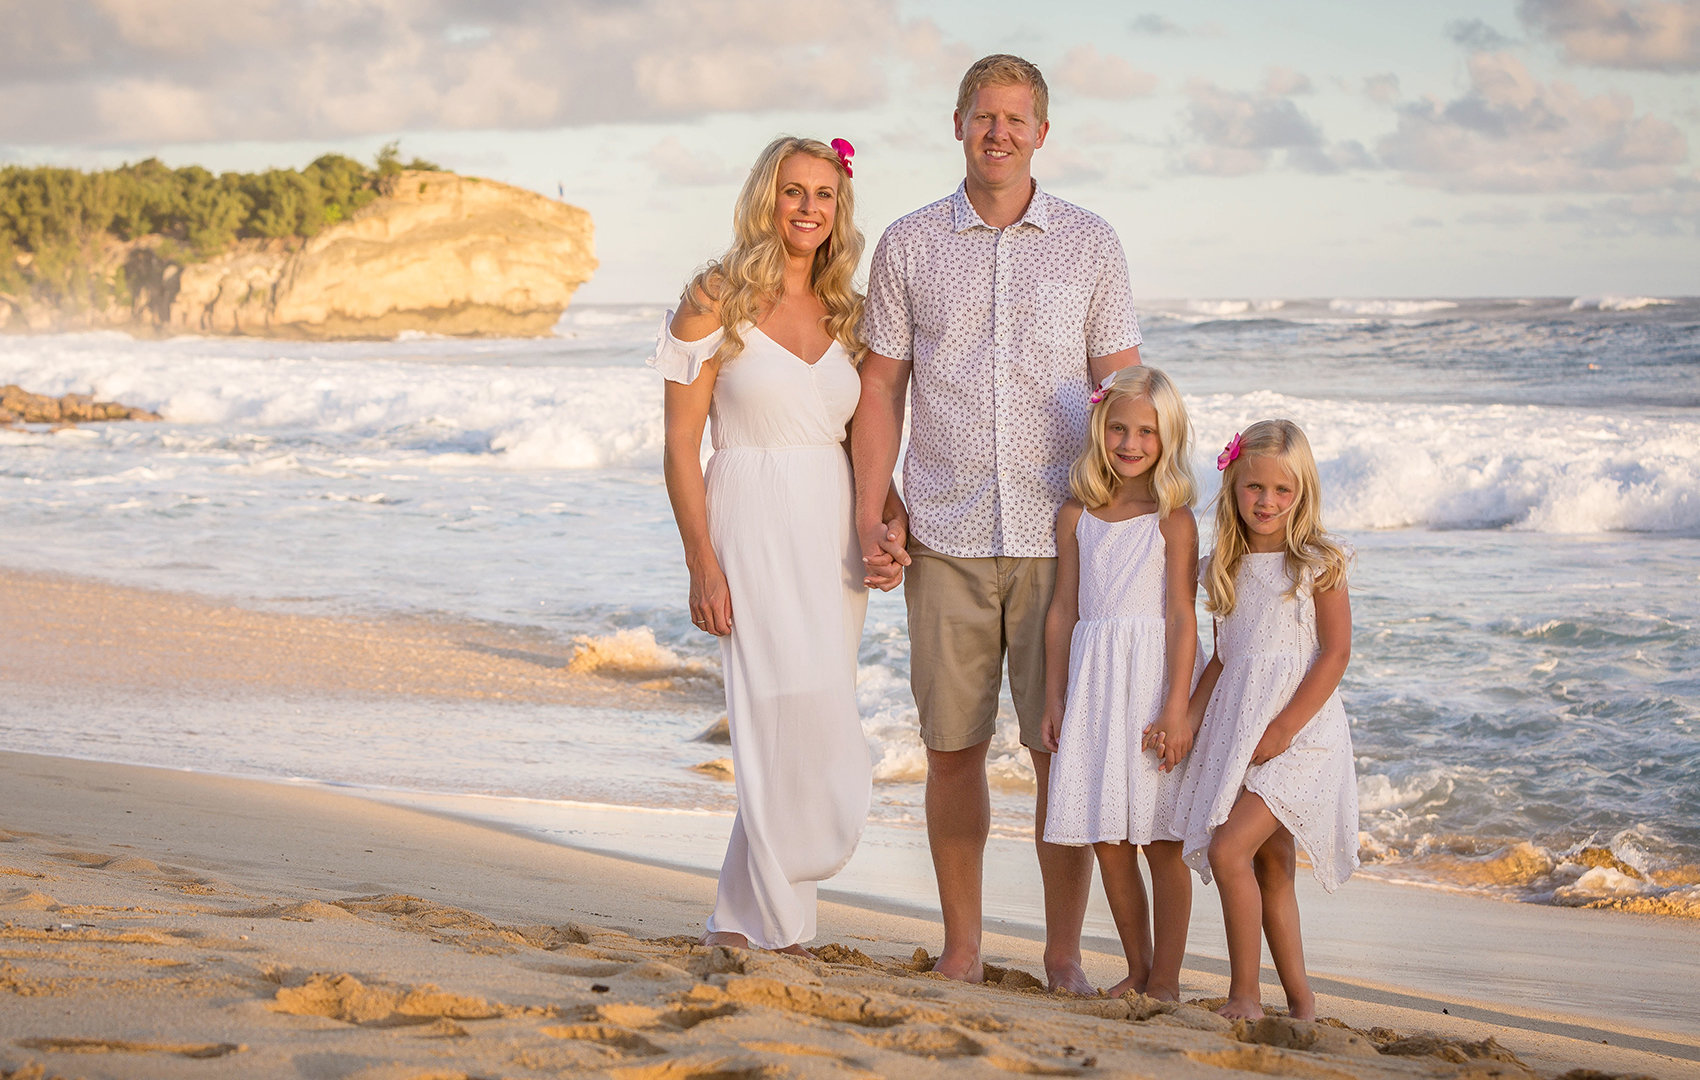 Kauai family wearing white and khaki colors